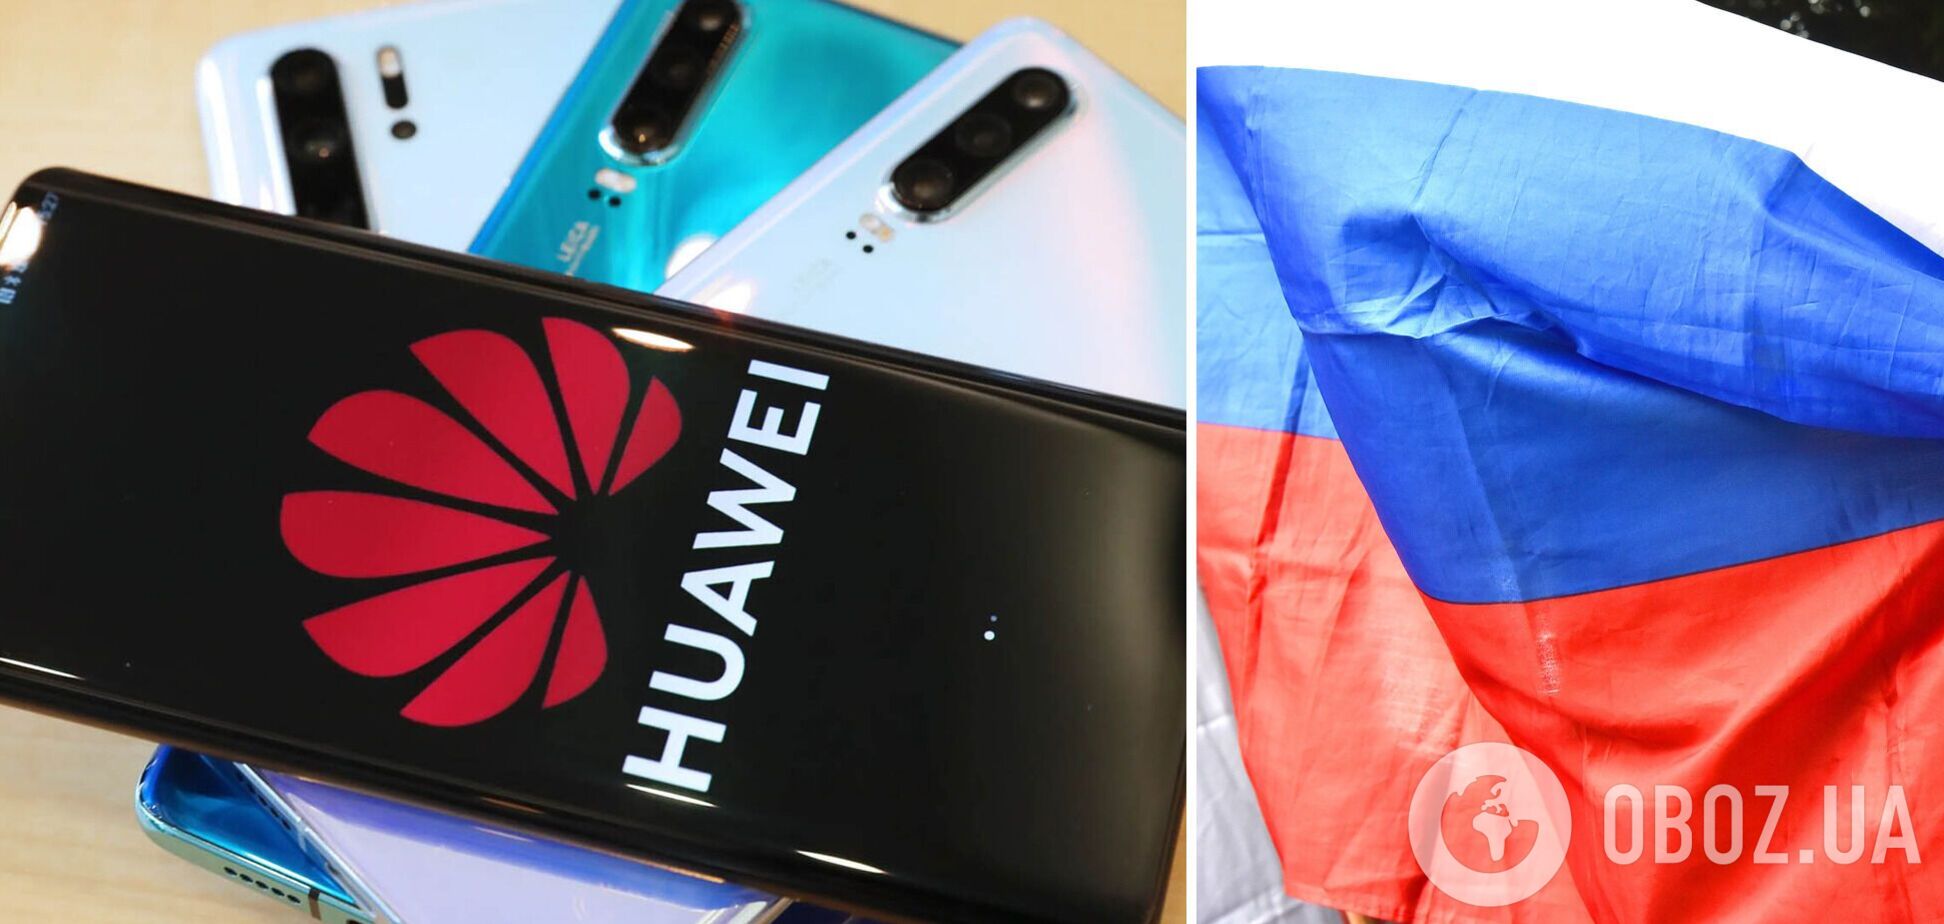 Китайский Huawei прекратил прямые поставки смартфонов в Россию и может окончательно уйти из страны – СМИ